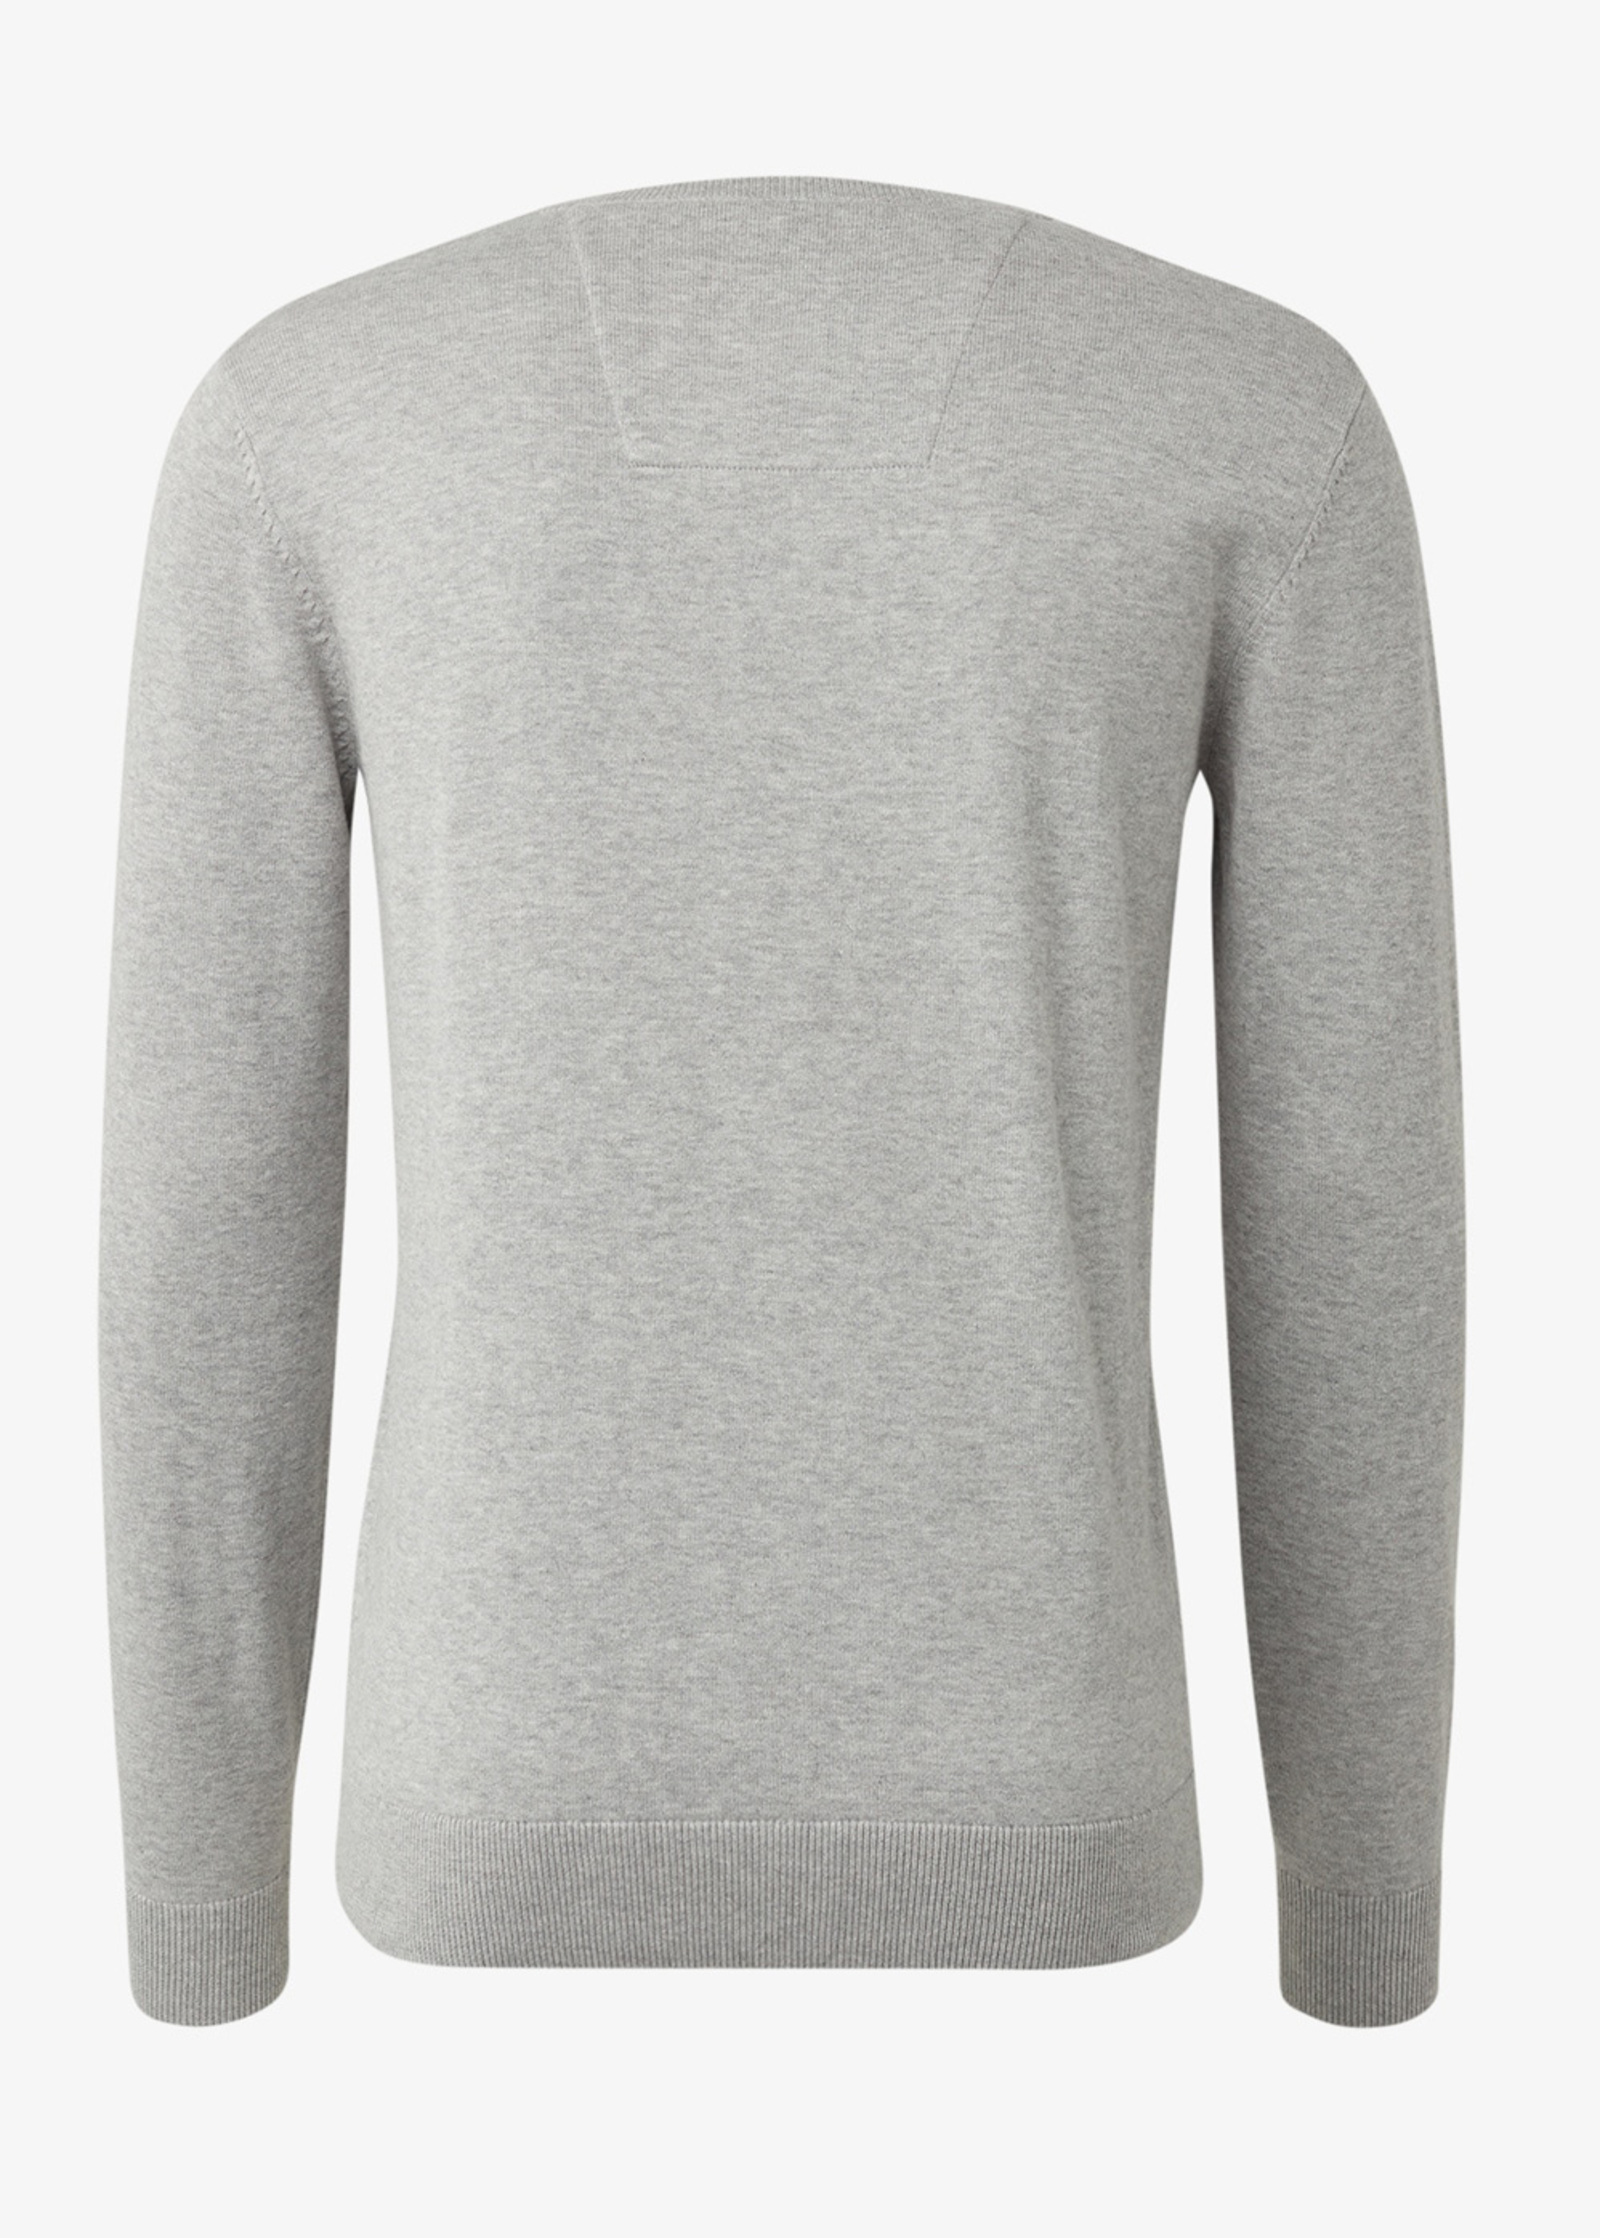 Tom Tailor Simple Knitted Jumper Light Soft Grey Melange - 1012819-14427  Size S